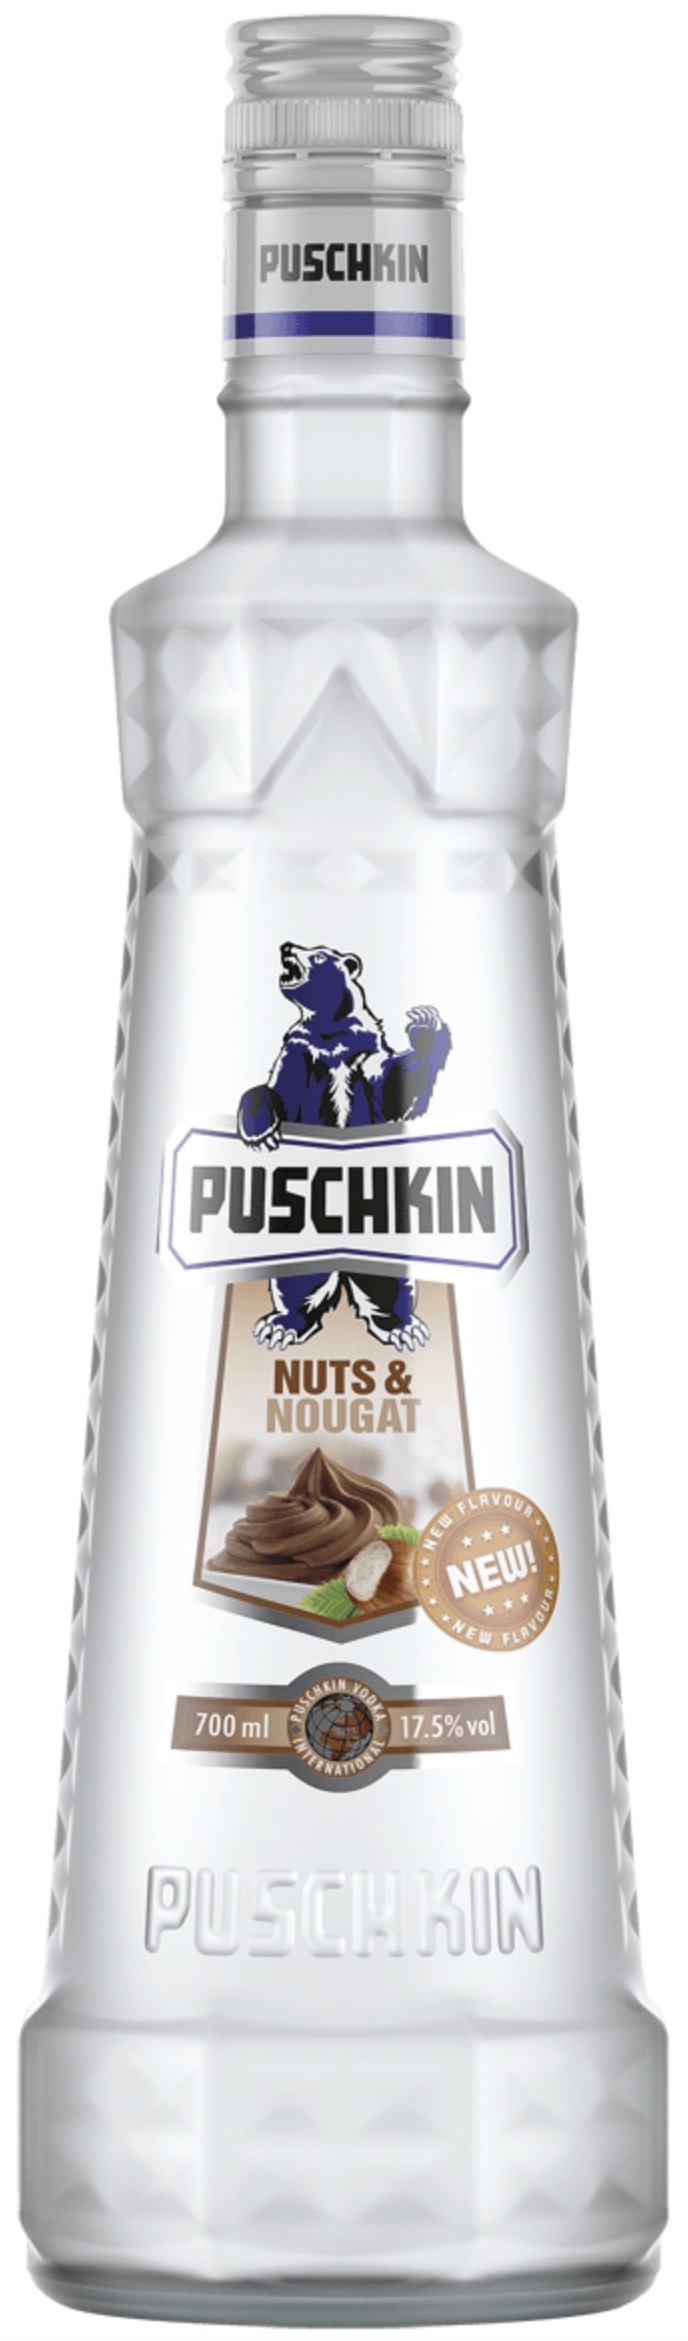 Puschkin Nuts Nougat 17,5% vol. 0,7L